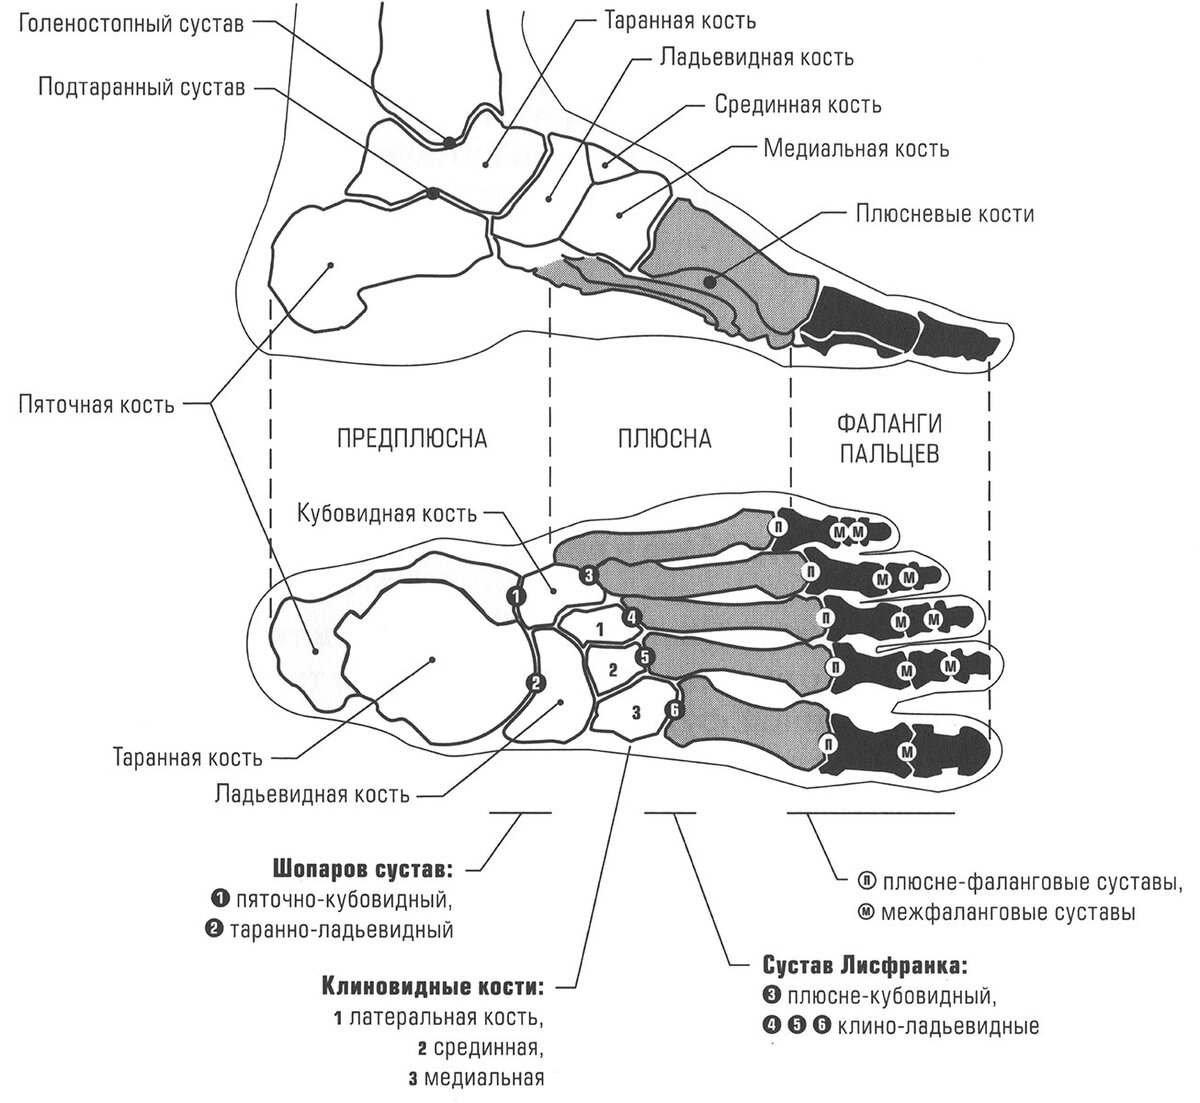 Строение ступни ноги человека фото с описанием костей и органов